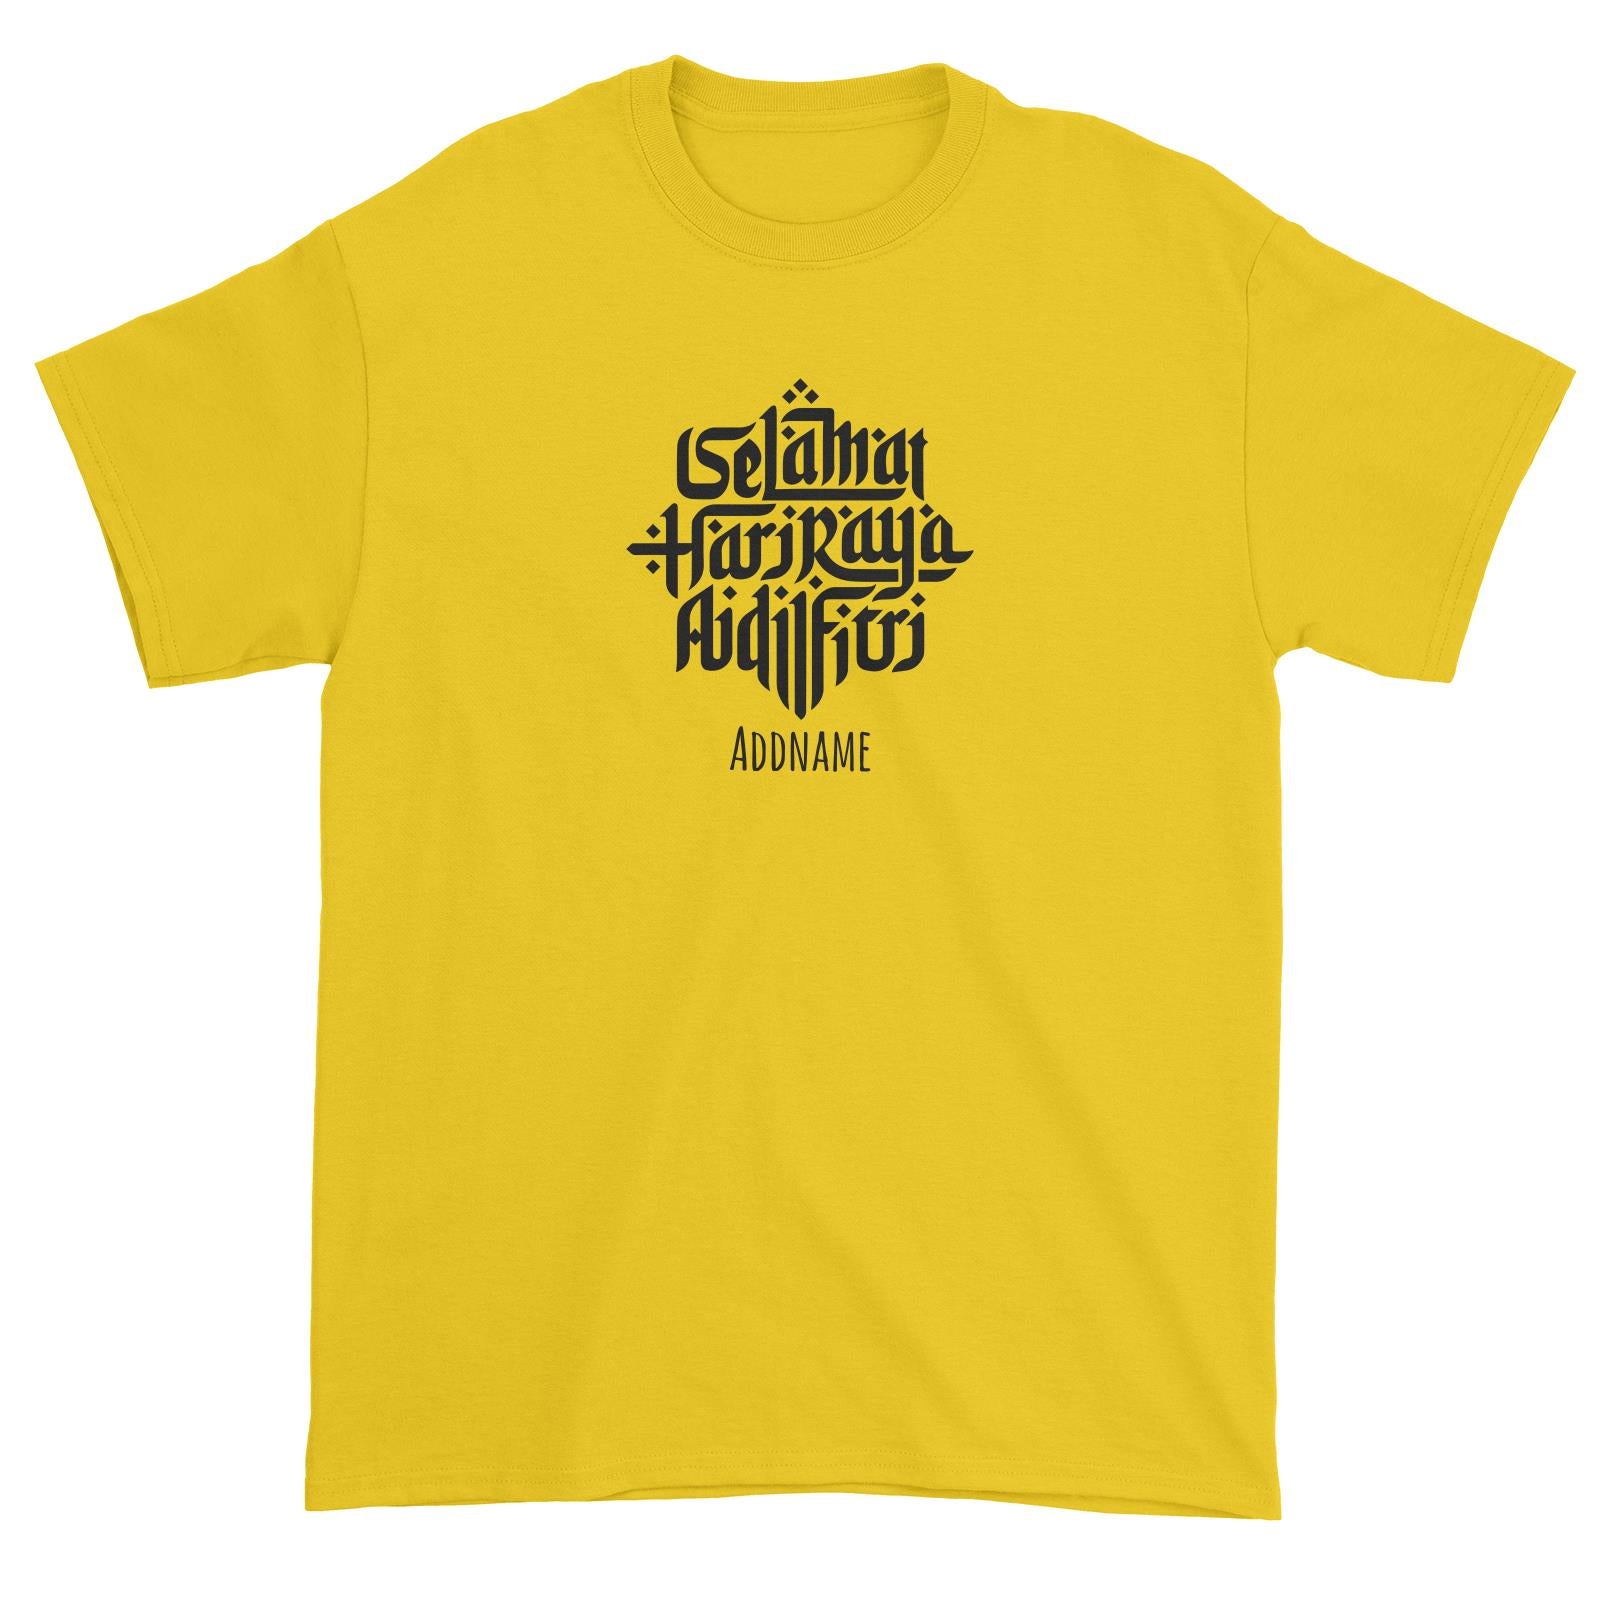 Selamat Hari Raya Aidilfitri Unisex T-Shirt  Personalizable Designs